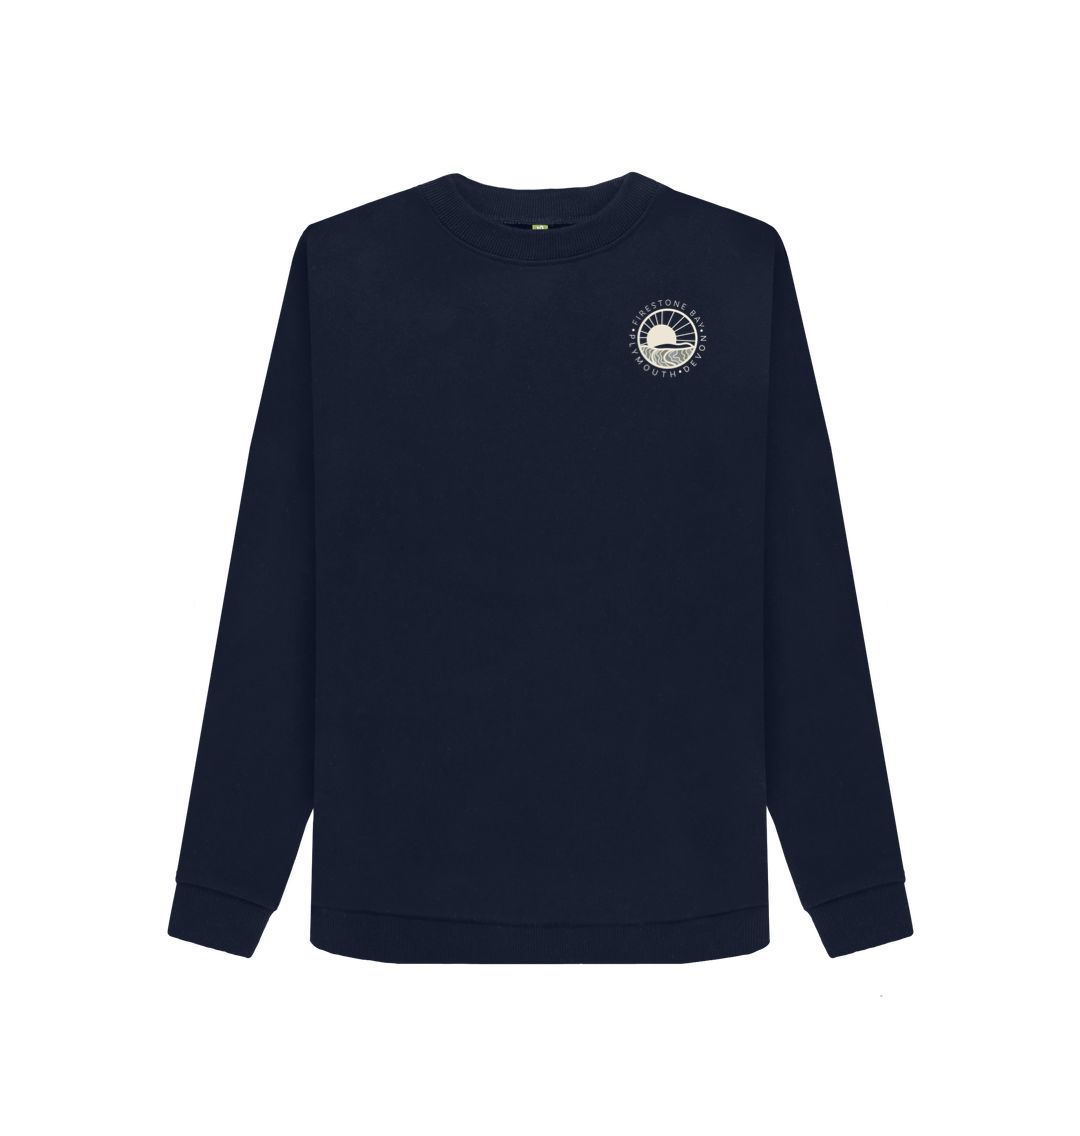 Navy Blue Women's Firestone Bay Sweater